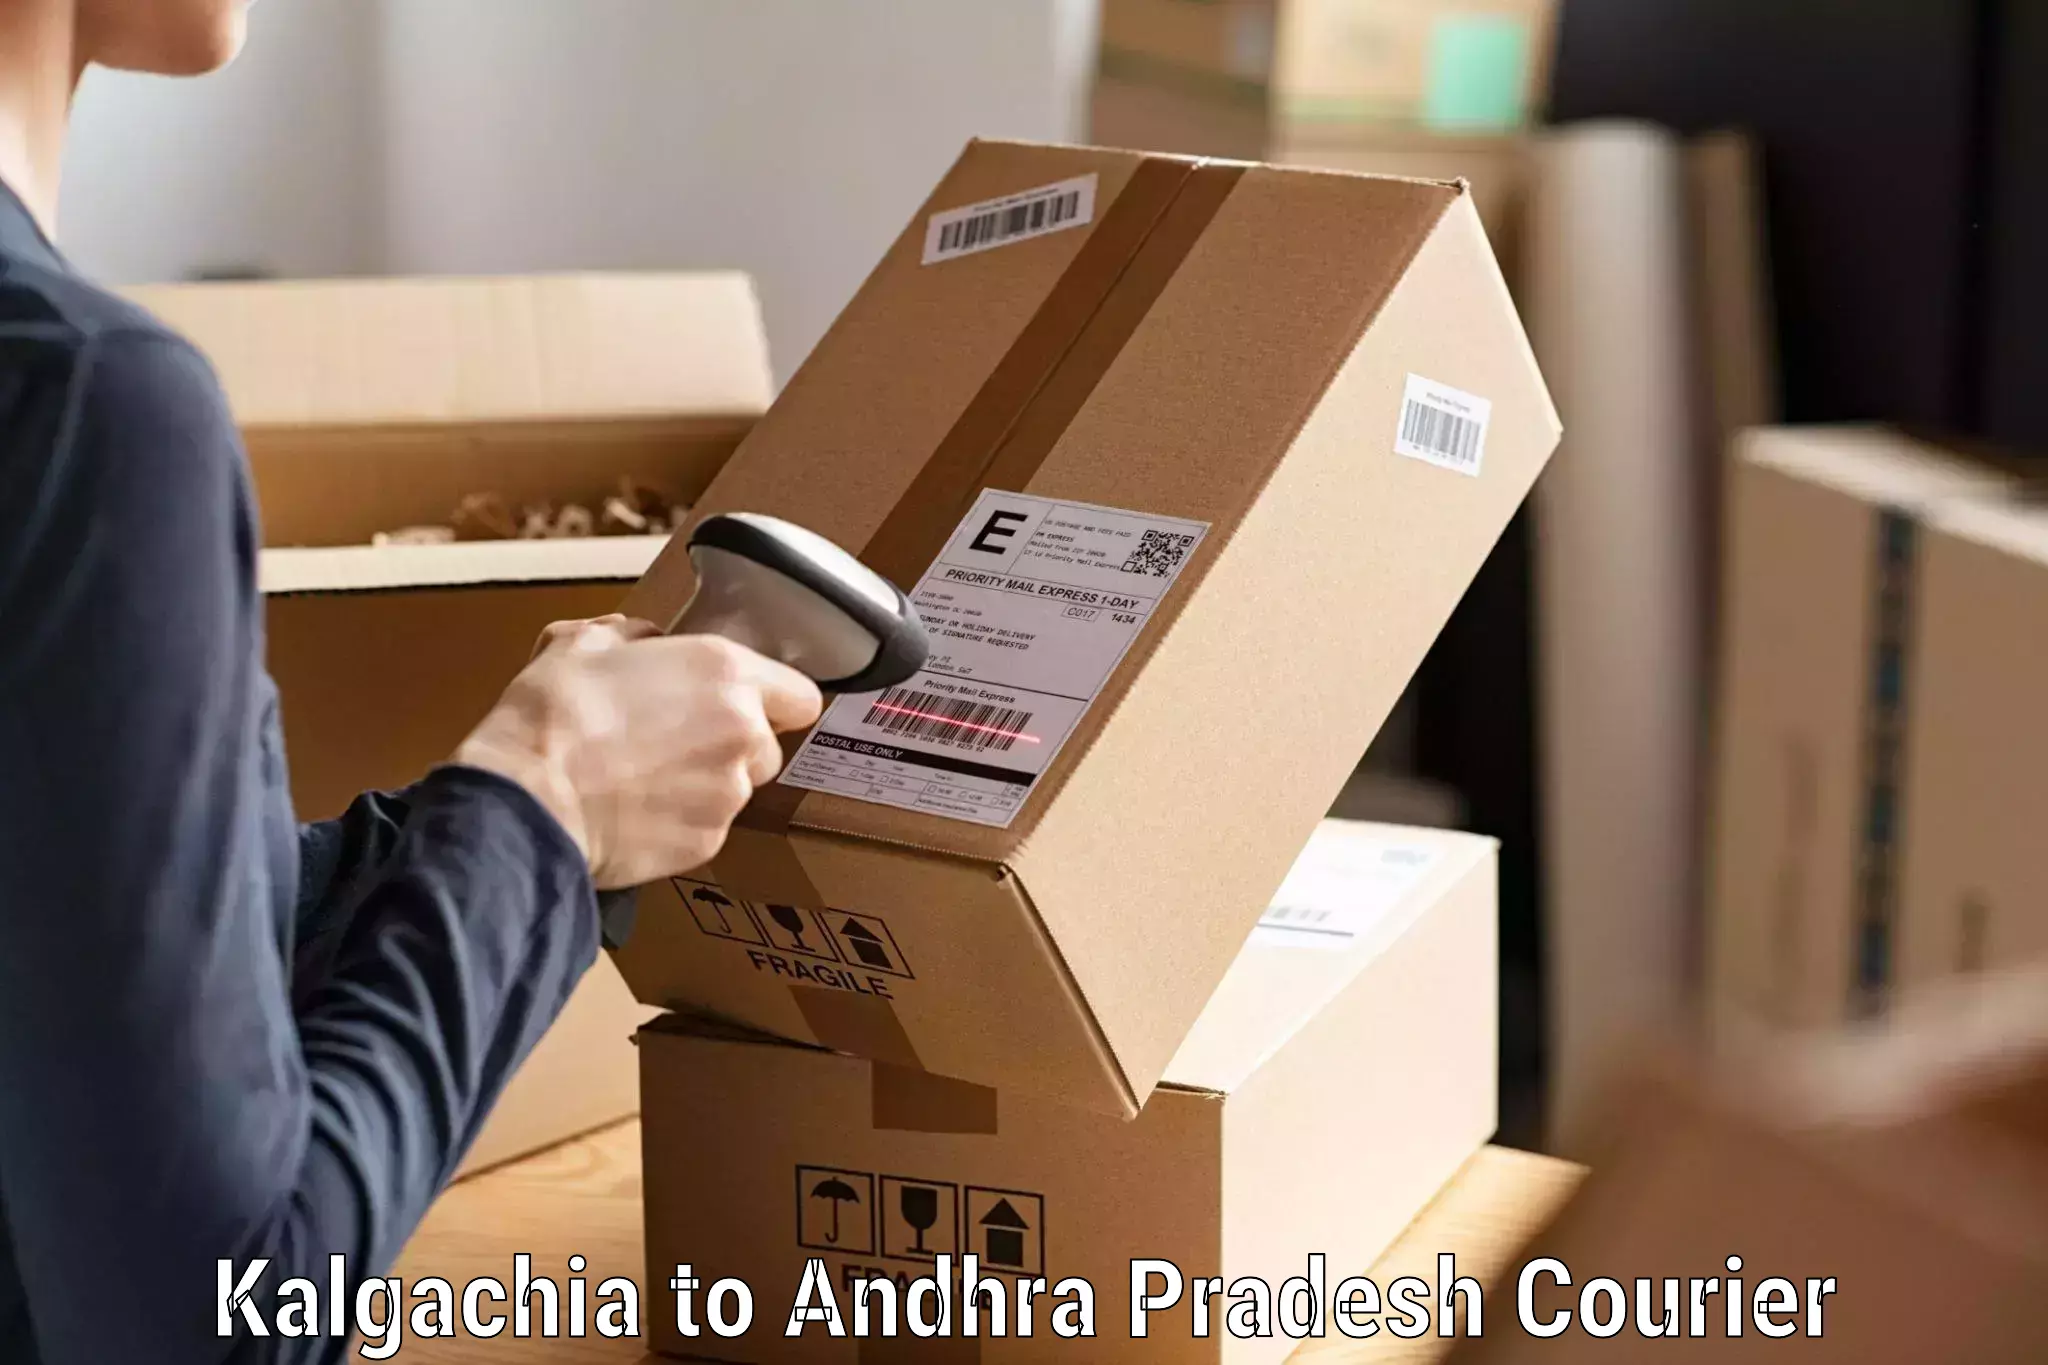 Reliable courier service Kalgachia to Visakhapatnam Port